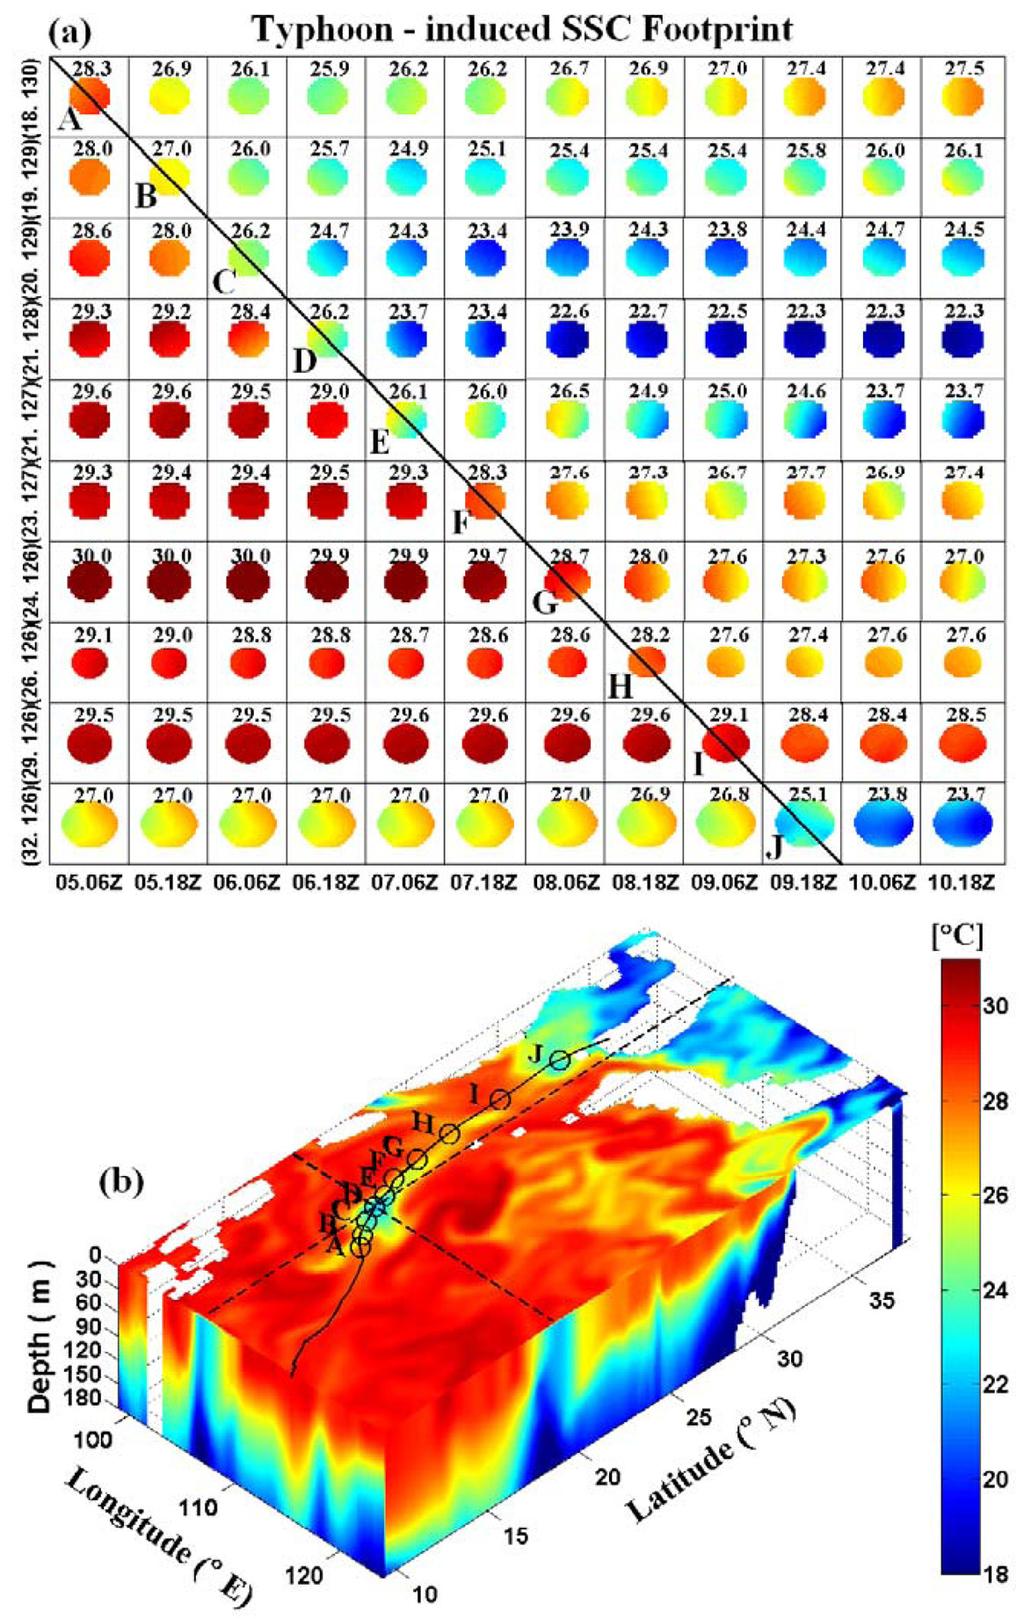 정영윤 문일주 김성훈 9 열자료에서바람방향이태풍경로의우측에서는시계방향, 그리고좌측에서는반시계방향으로회전하기때문에발생한다 (Cornillon et al., 1987). 즉, 태풍에의해발생한해류는관성에의해북반구에서는시계방향으로회전하게되고태풍경로의우측에서는이해류가바람방향과일치하면서공진 (resonance) 현상에의해해류는더욱강화된다.